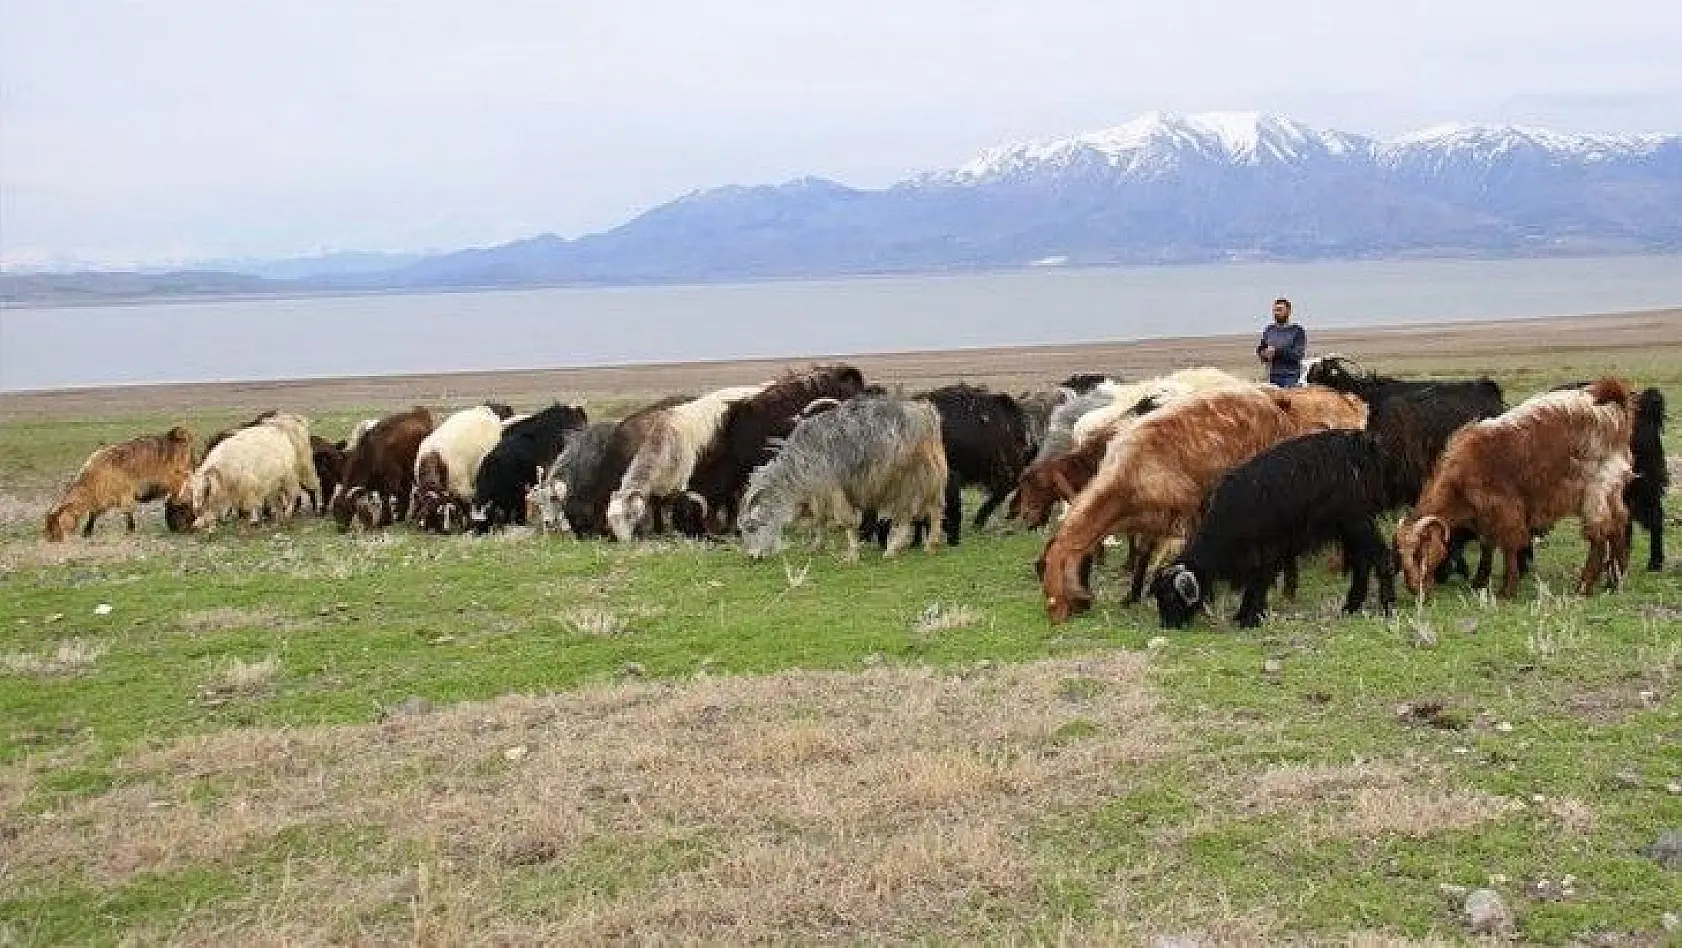 Süt için aldığı keçiler, çift çift kuzulayınca sürü sahibi oldu